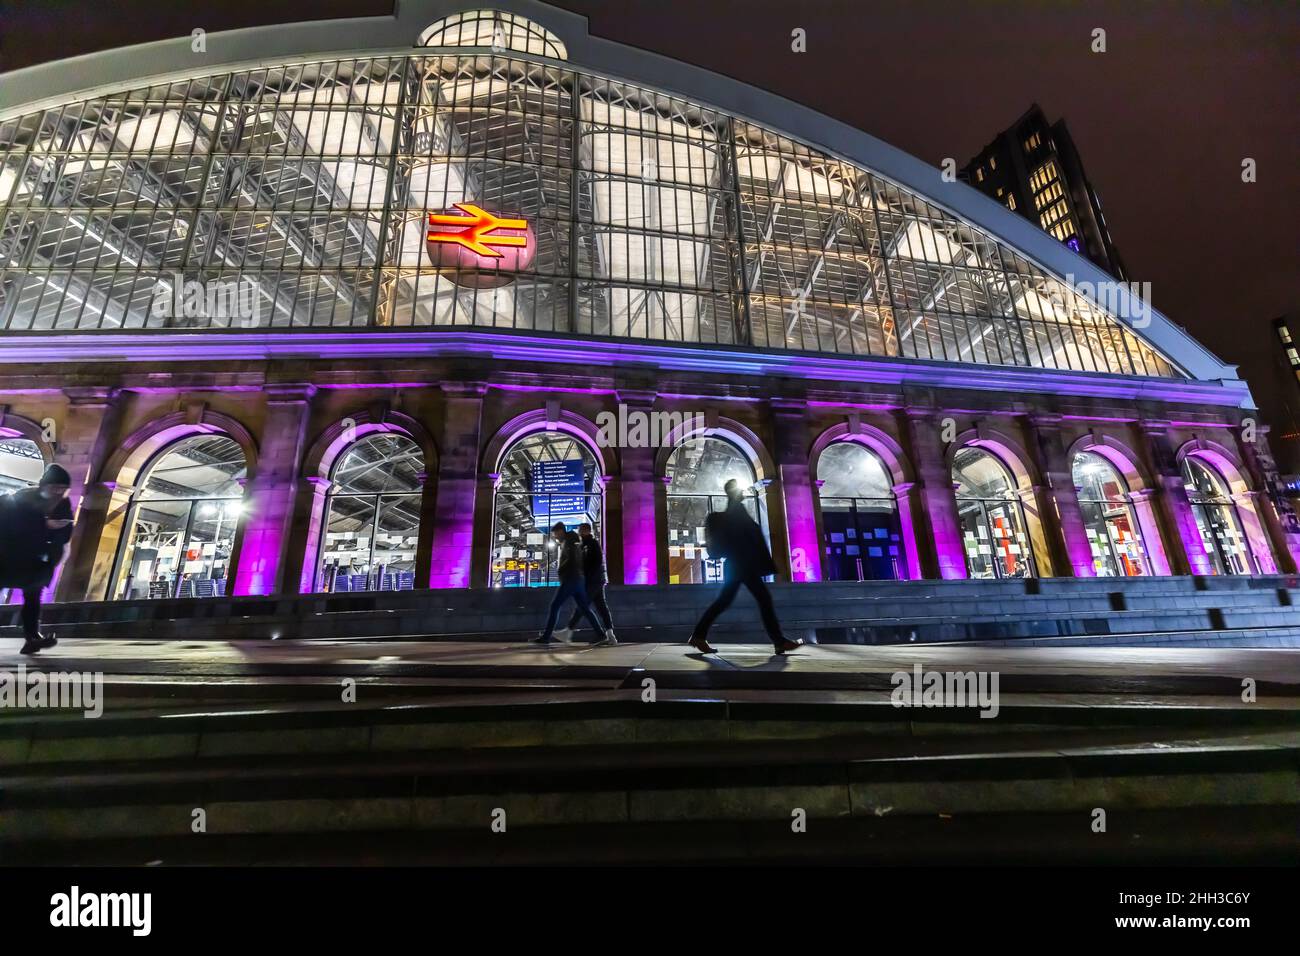 Fotografías nocturnas de Liverpool, mostrando los vibrantes colores de nuestra ciudad. Foto de stock